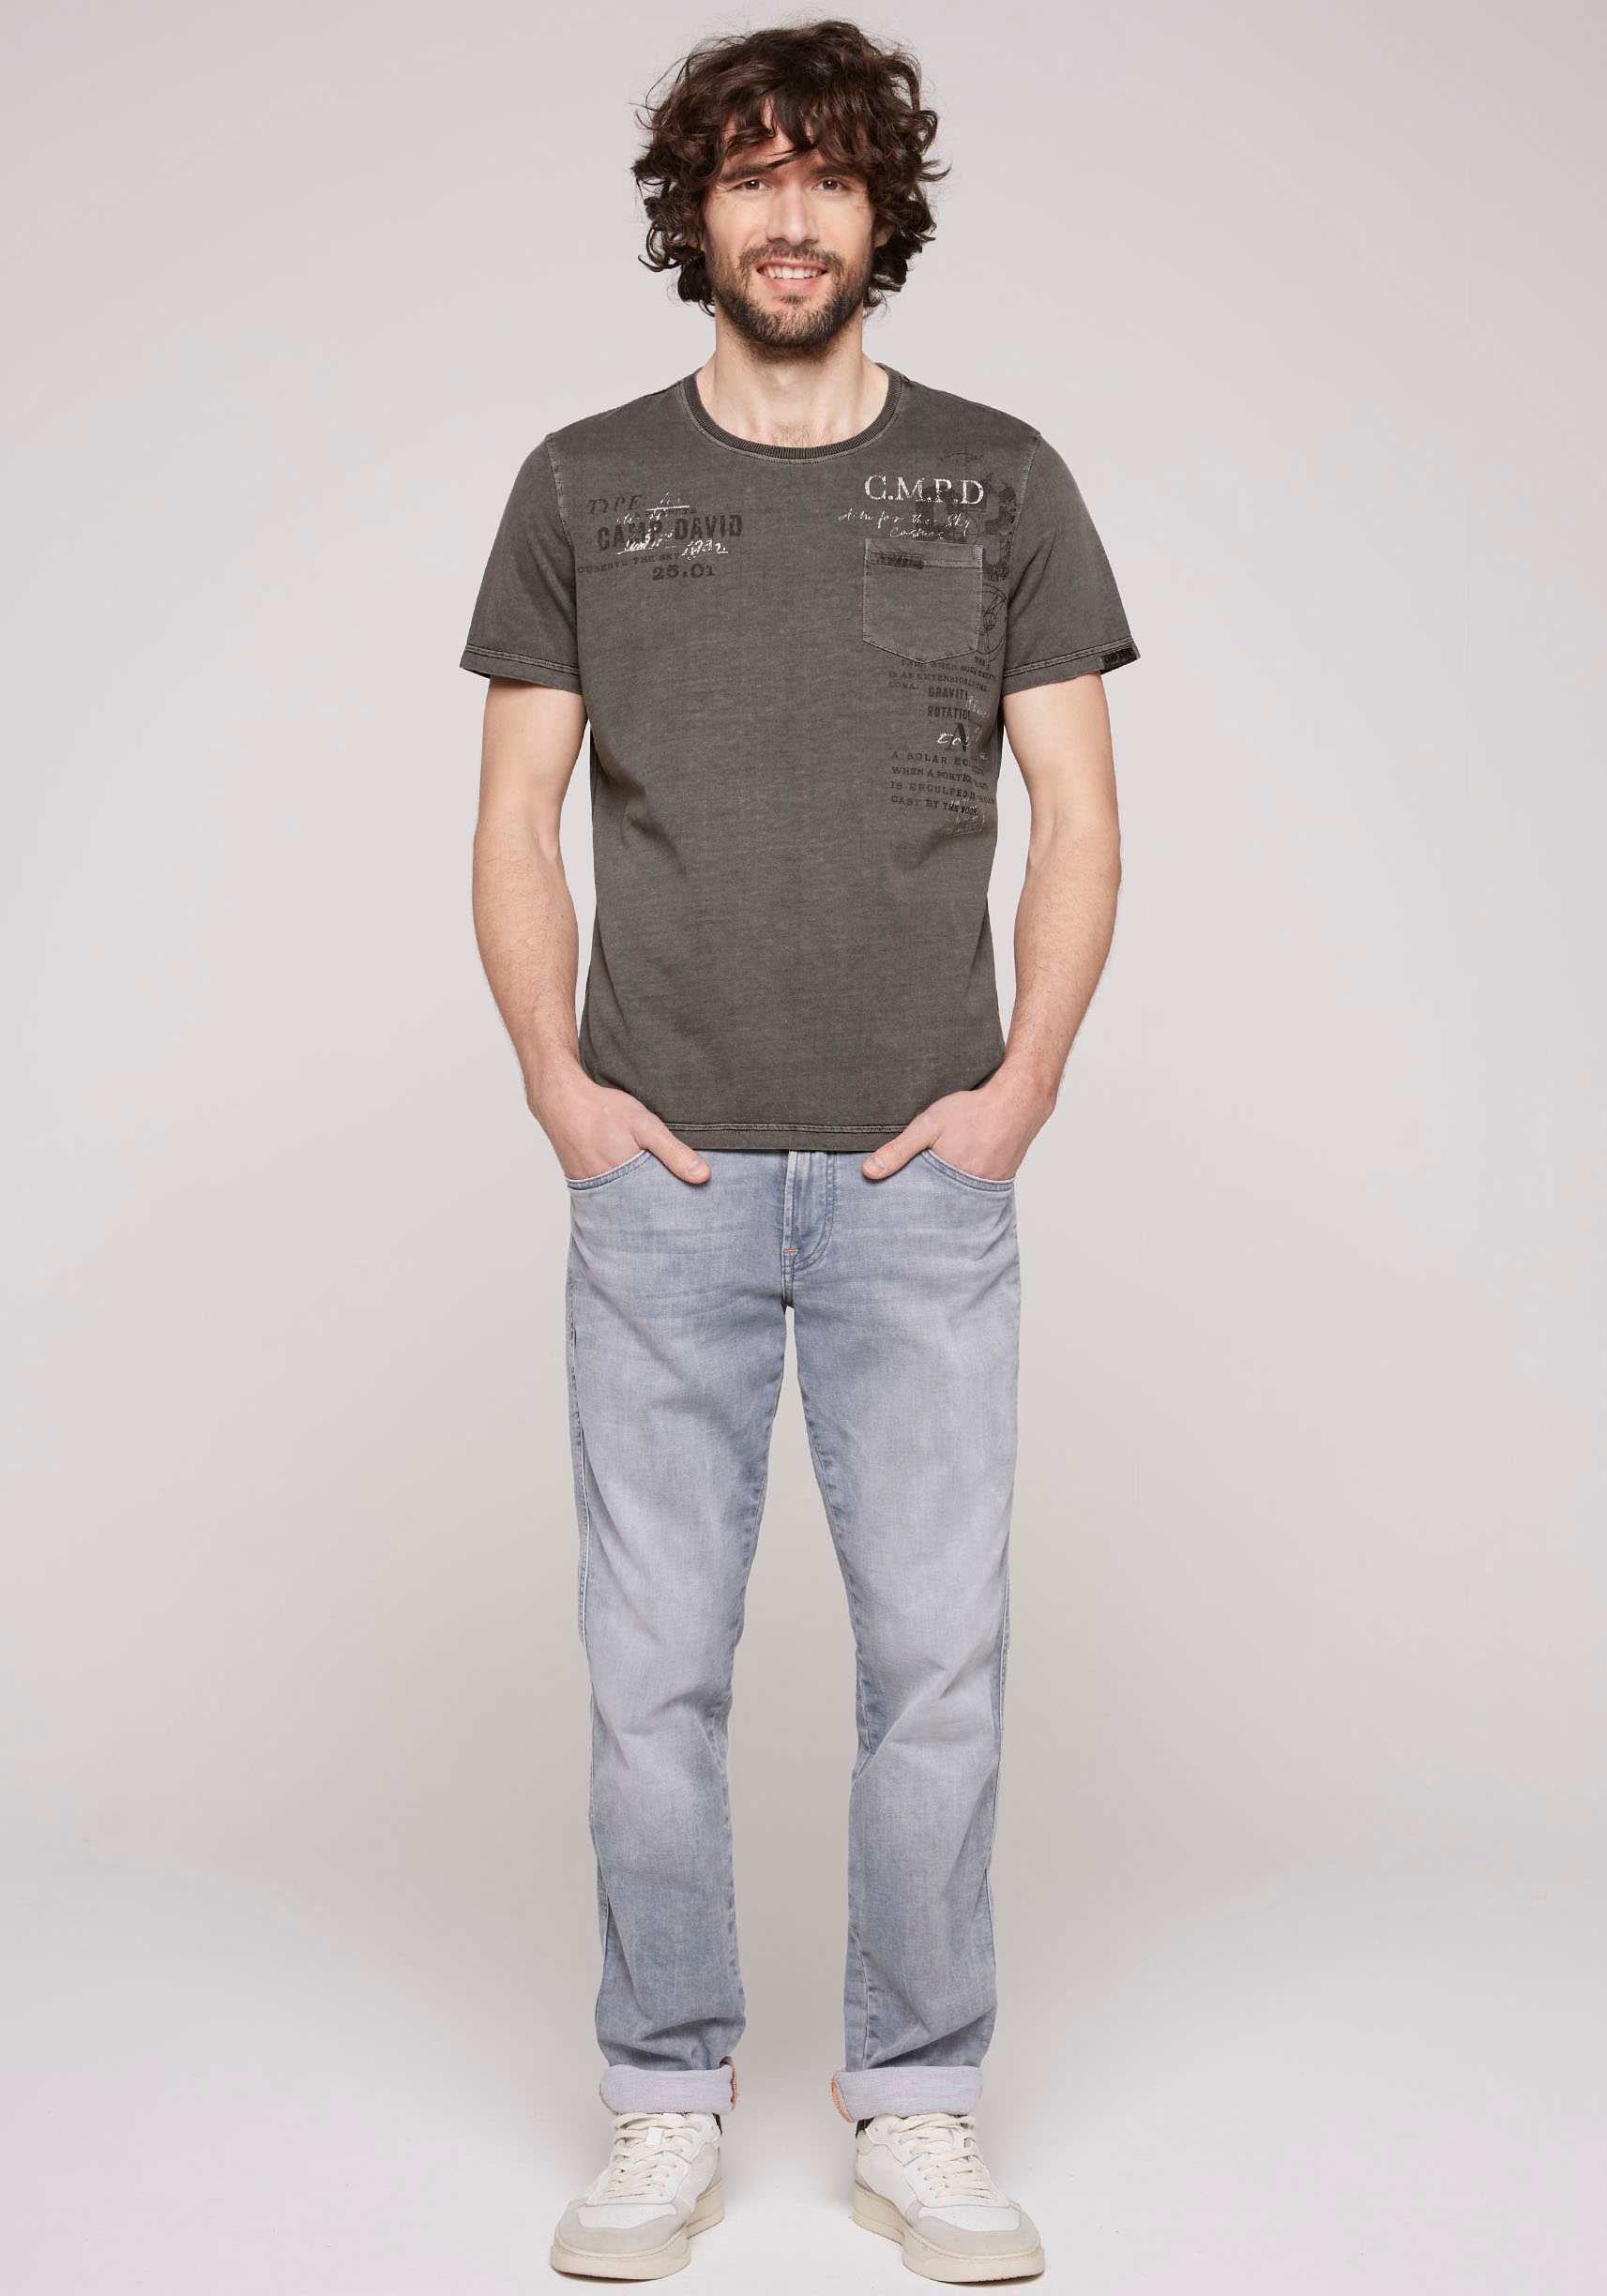 DAVID mit T-Shirt, Kontrastnähten | CAMP BAUR ▷ bestellen